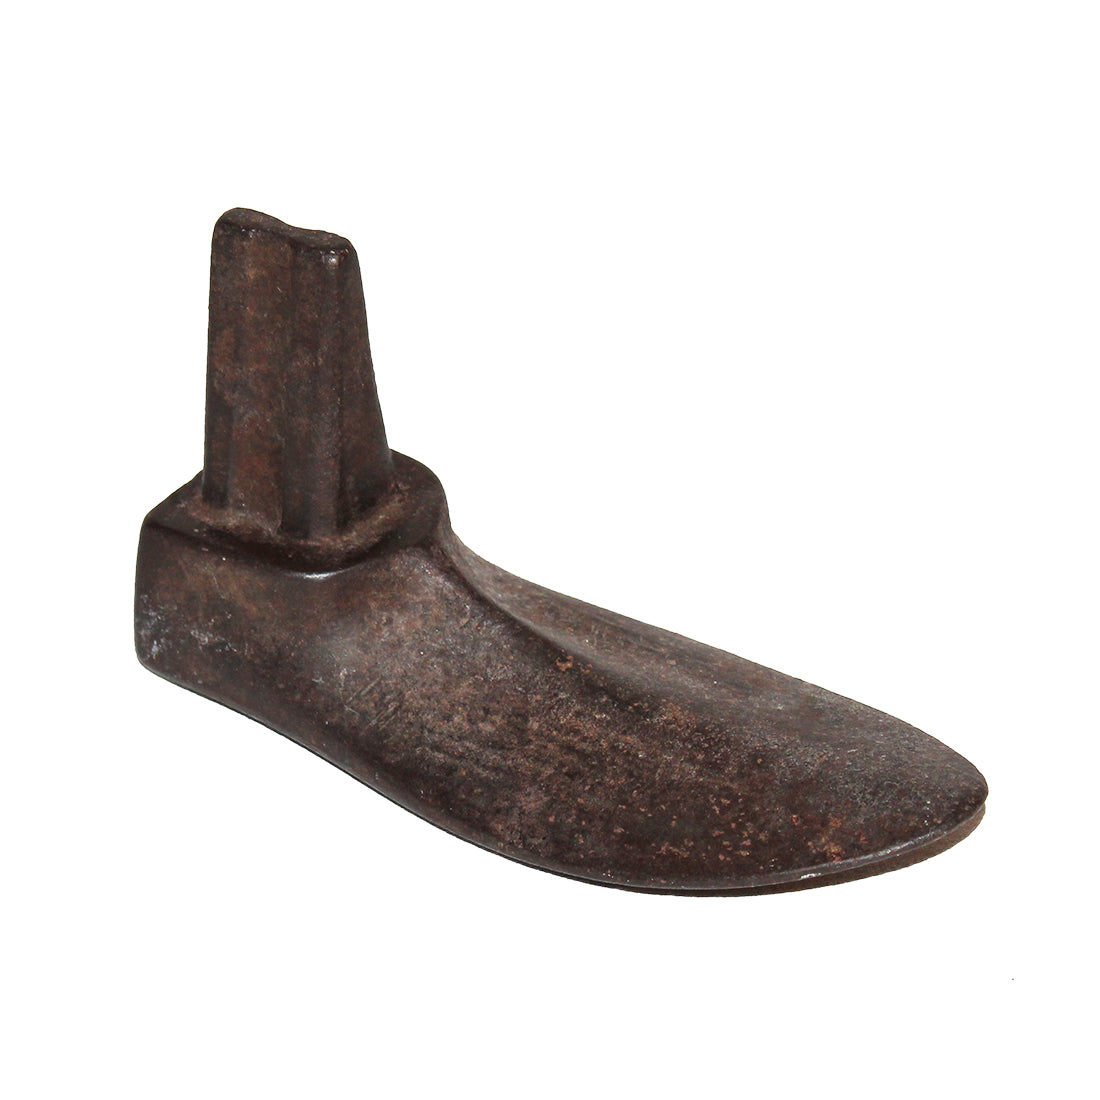 Ancien pied enfant enclume forme de chaussure de cordonnier en fonte 16 cm